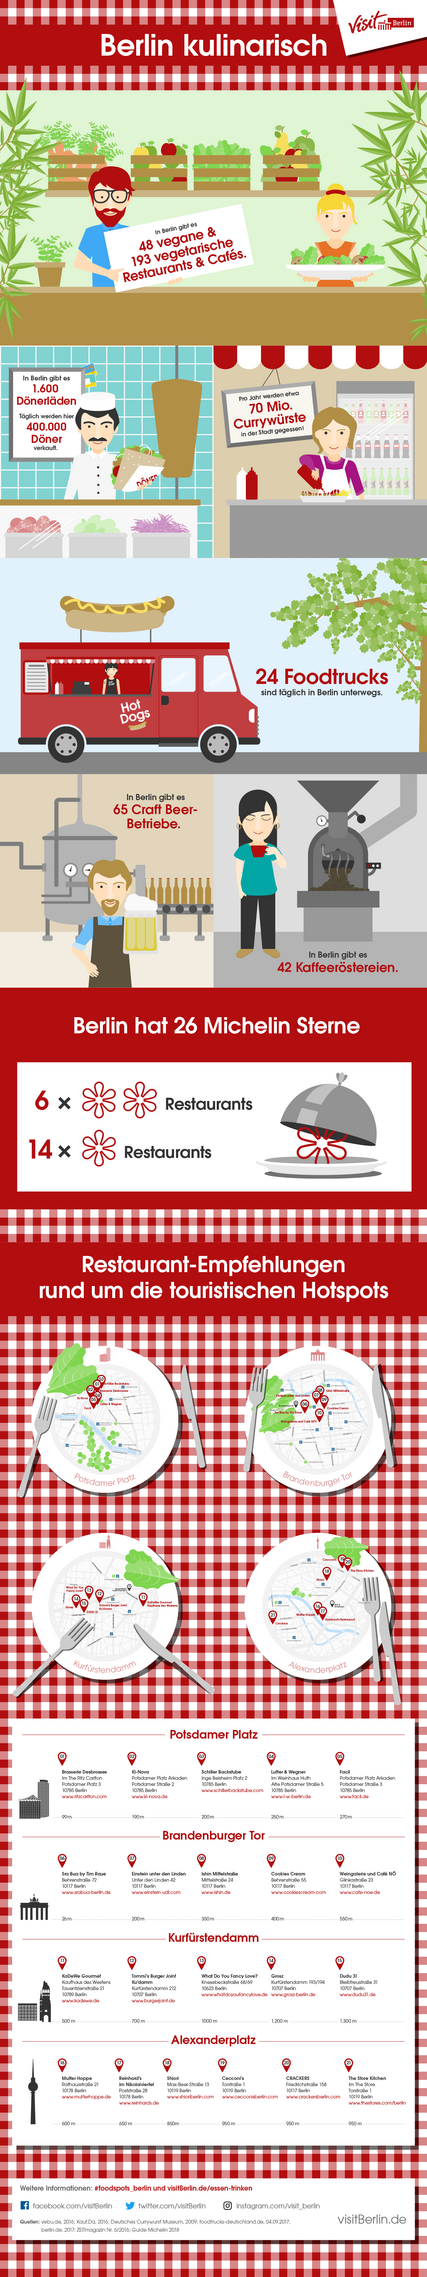 Berlin kulinarisch: In unserer Infografik erfahren Sie alles über die Berliner Gastro-Szene.